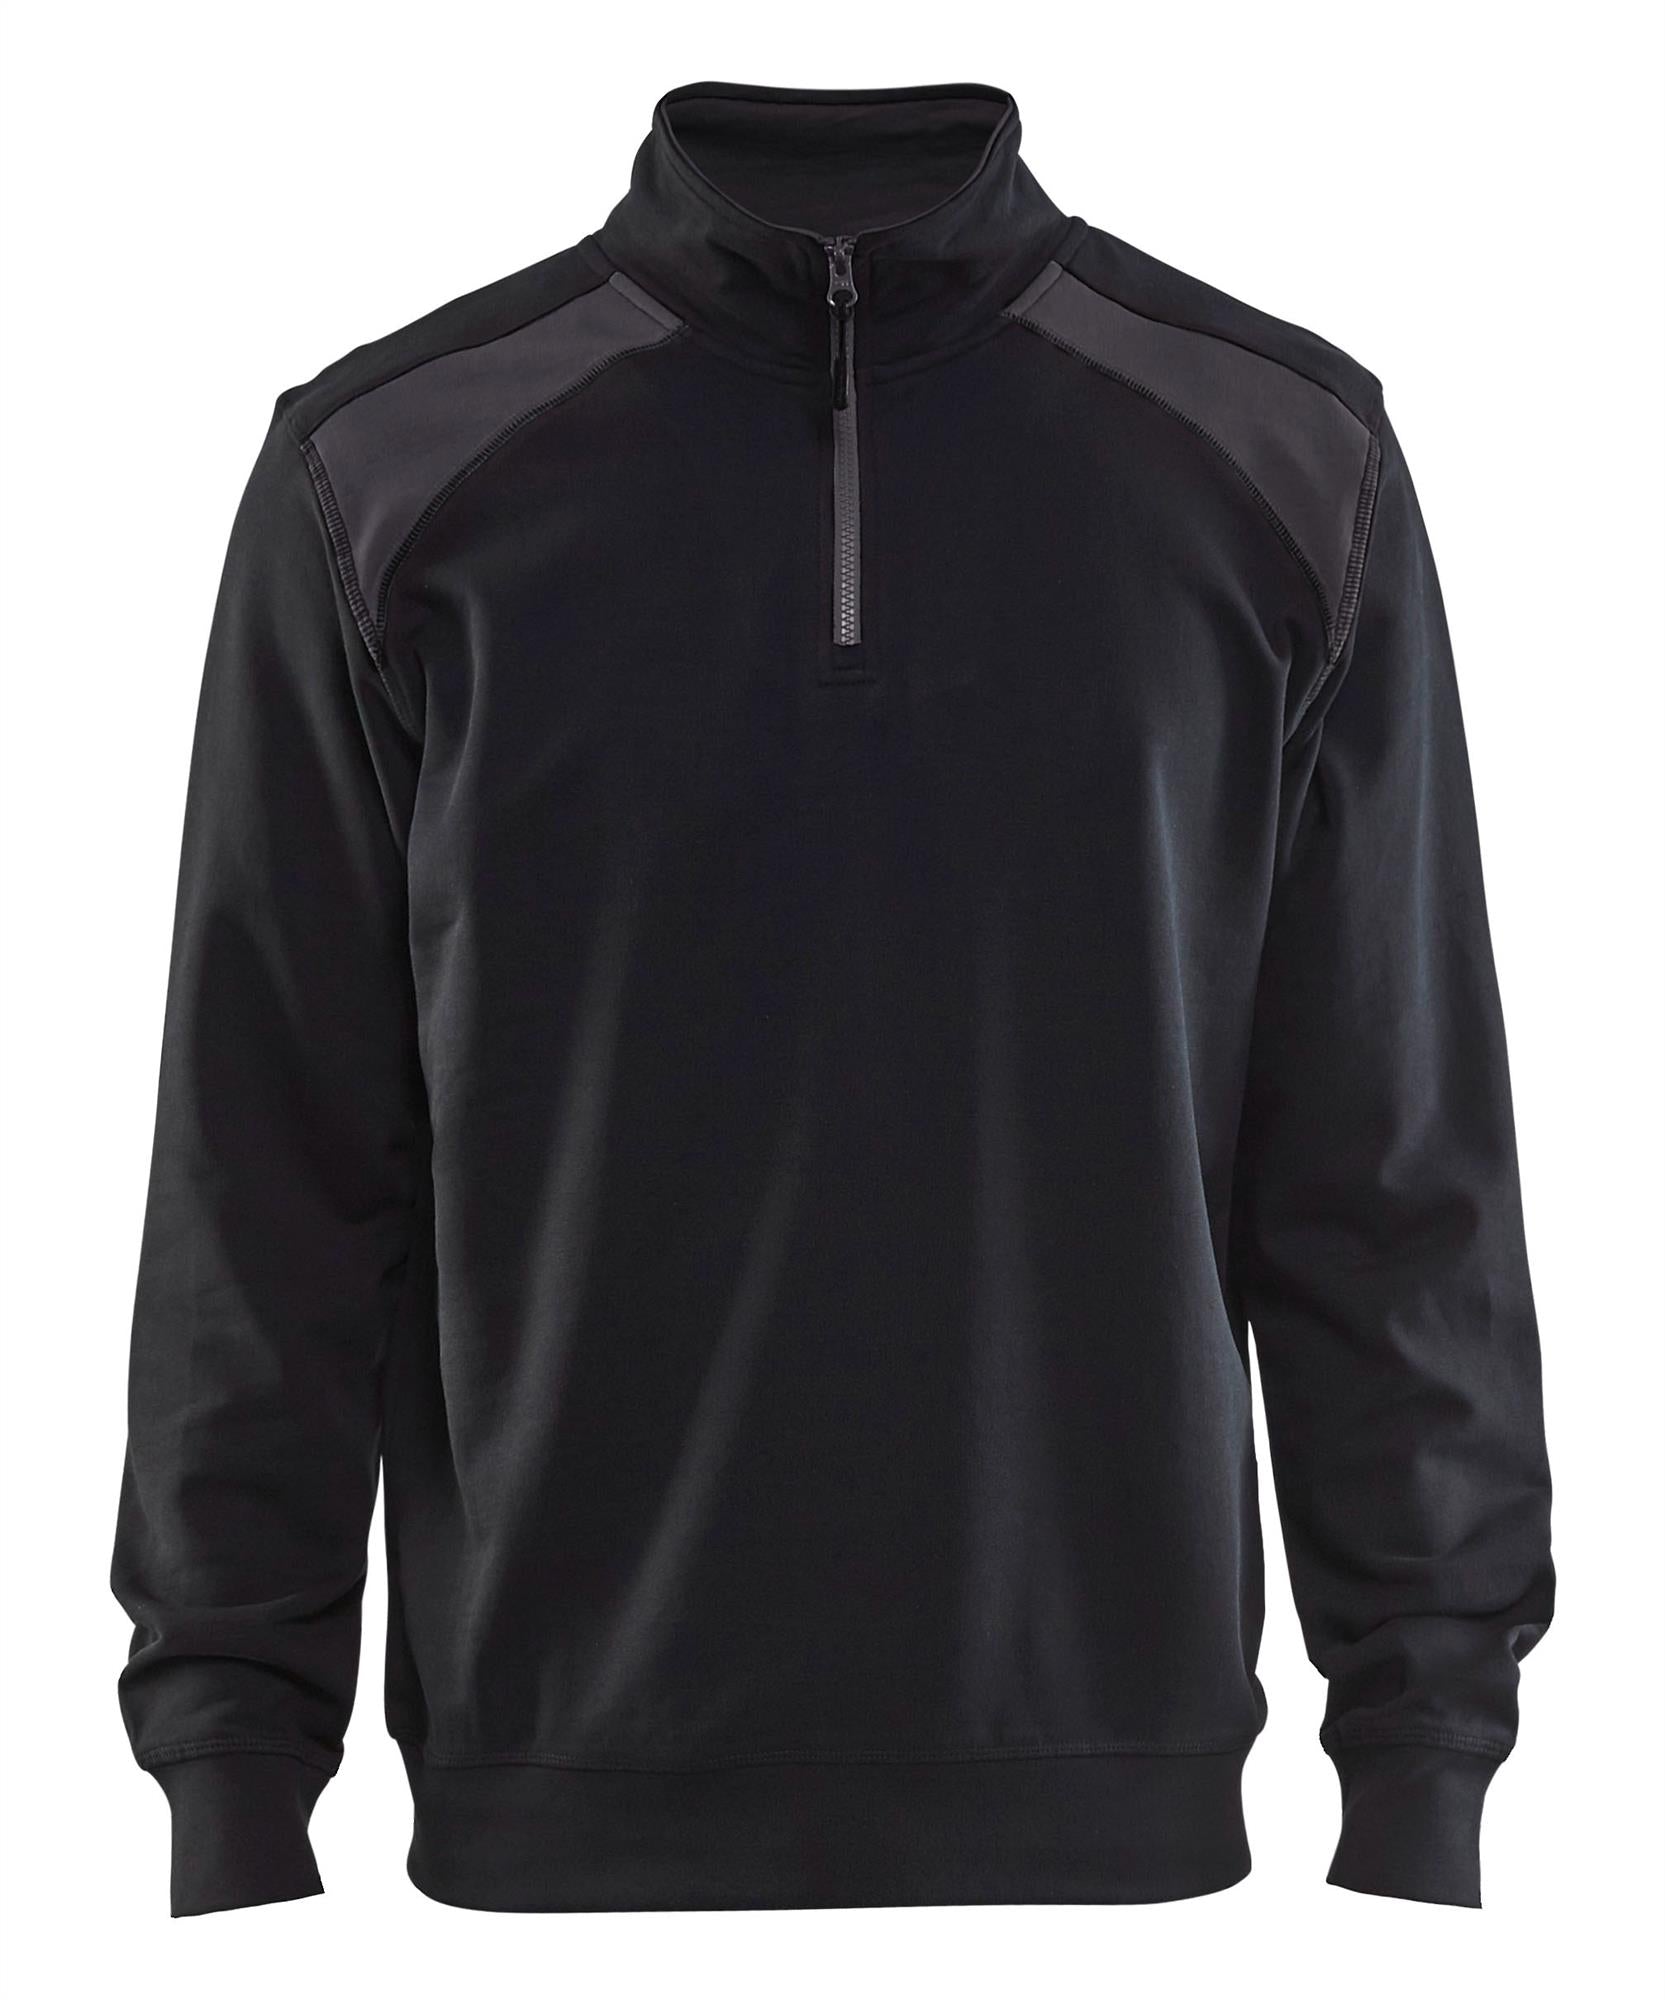 Blaklader black/dark grey cotton half-zip sweatshirt #3353